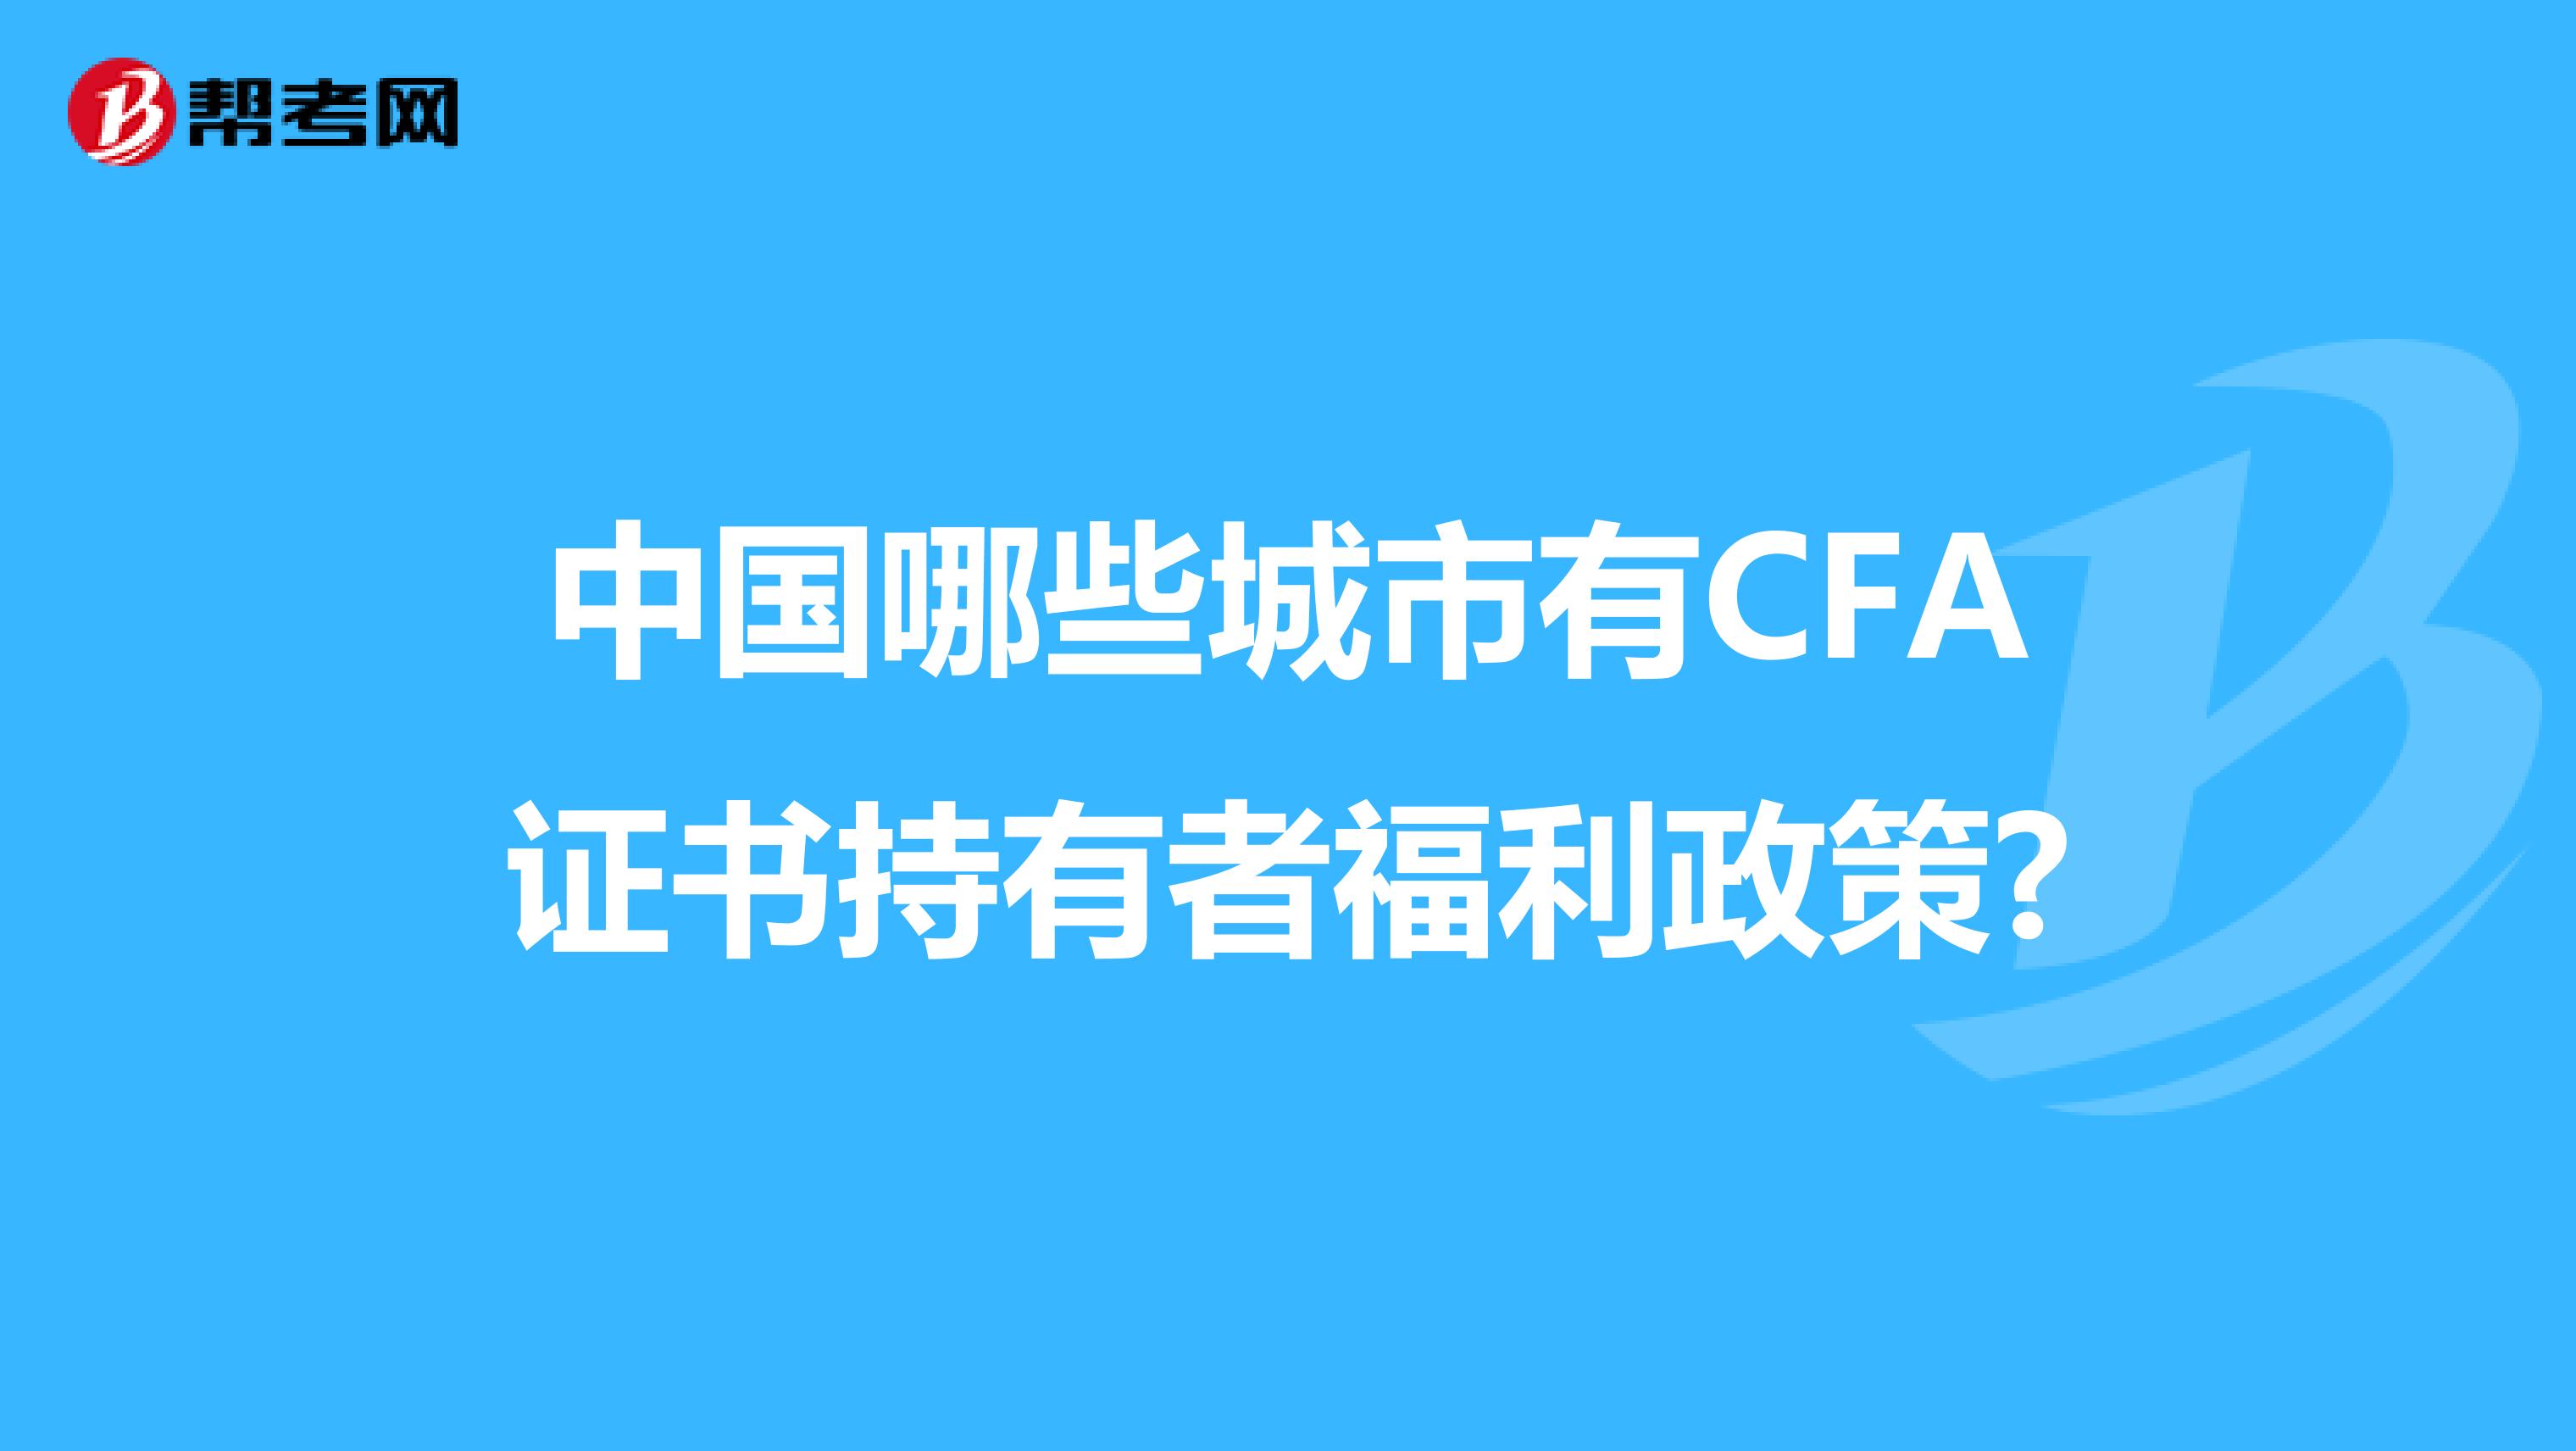 中国哪些城市有CFA证书持有者福利政策?